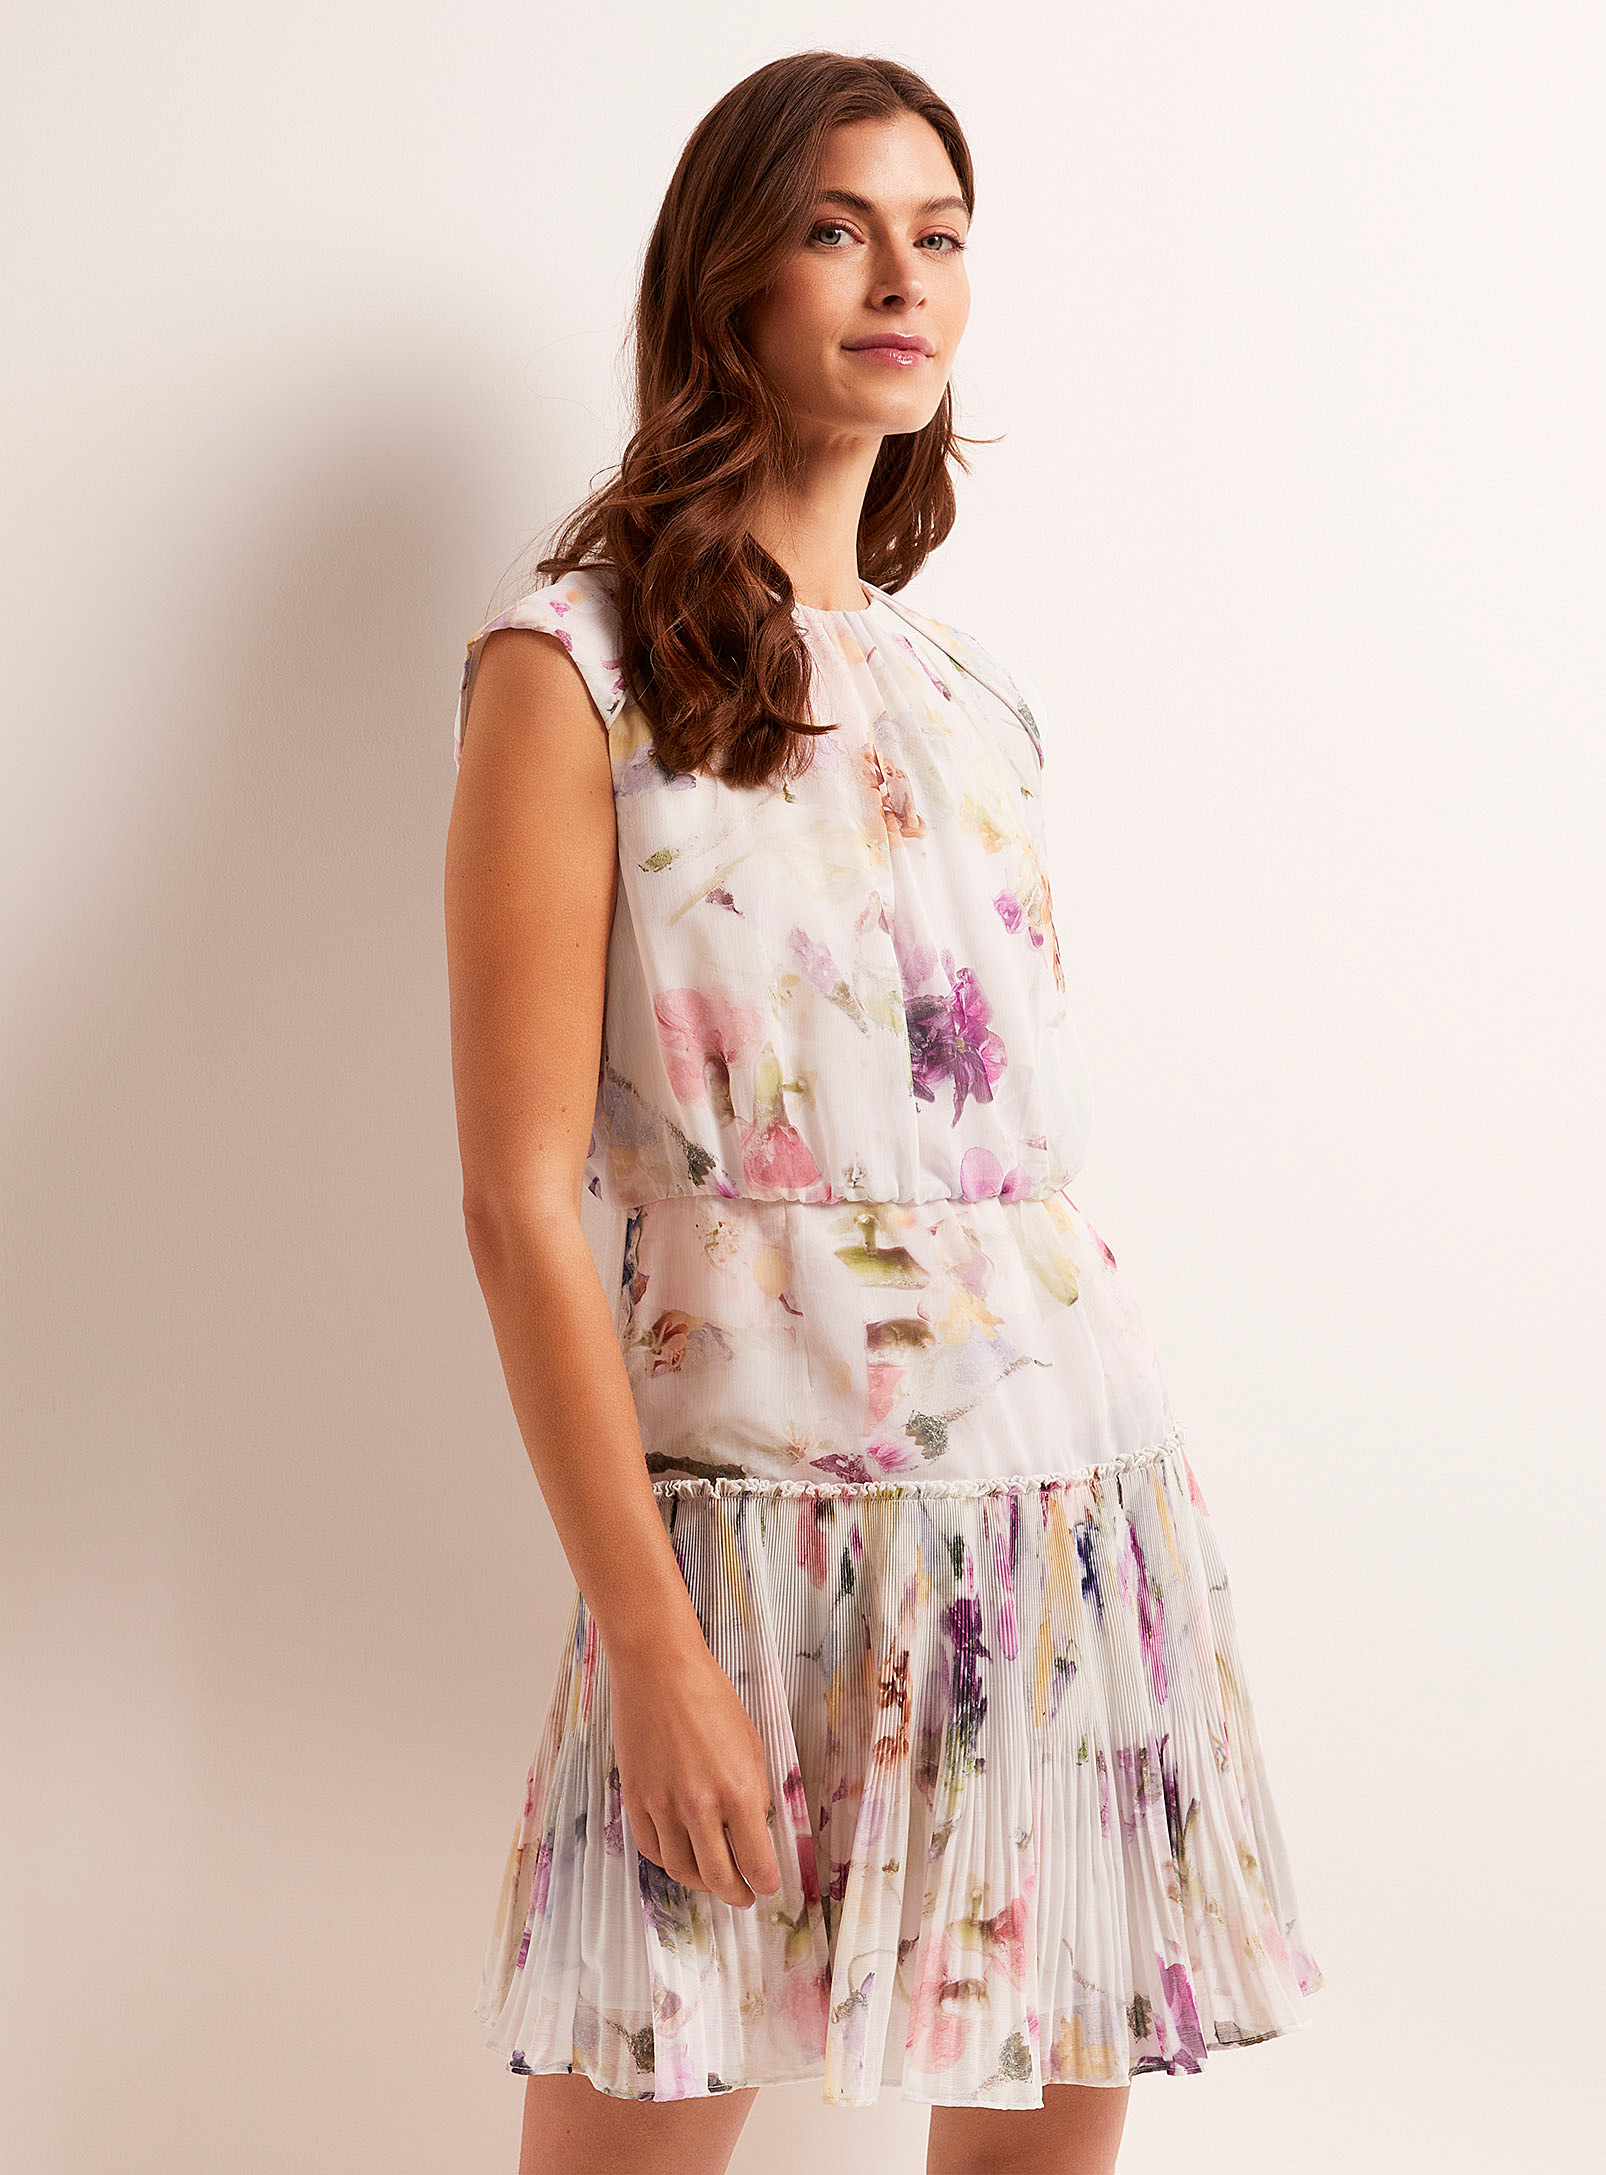 Ted Baker - La robe plissée floraison aquarelle Saintly